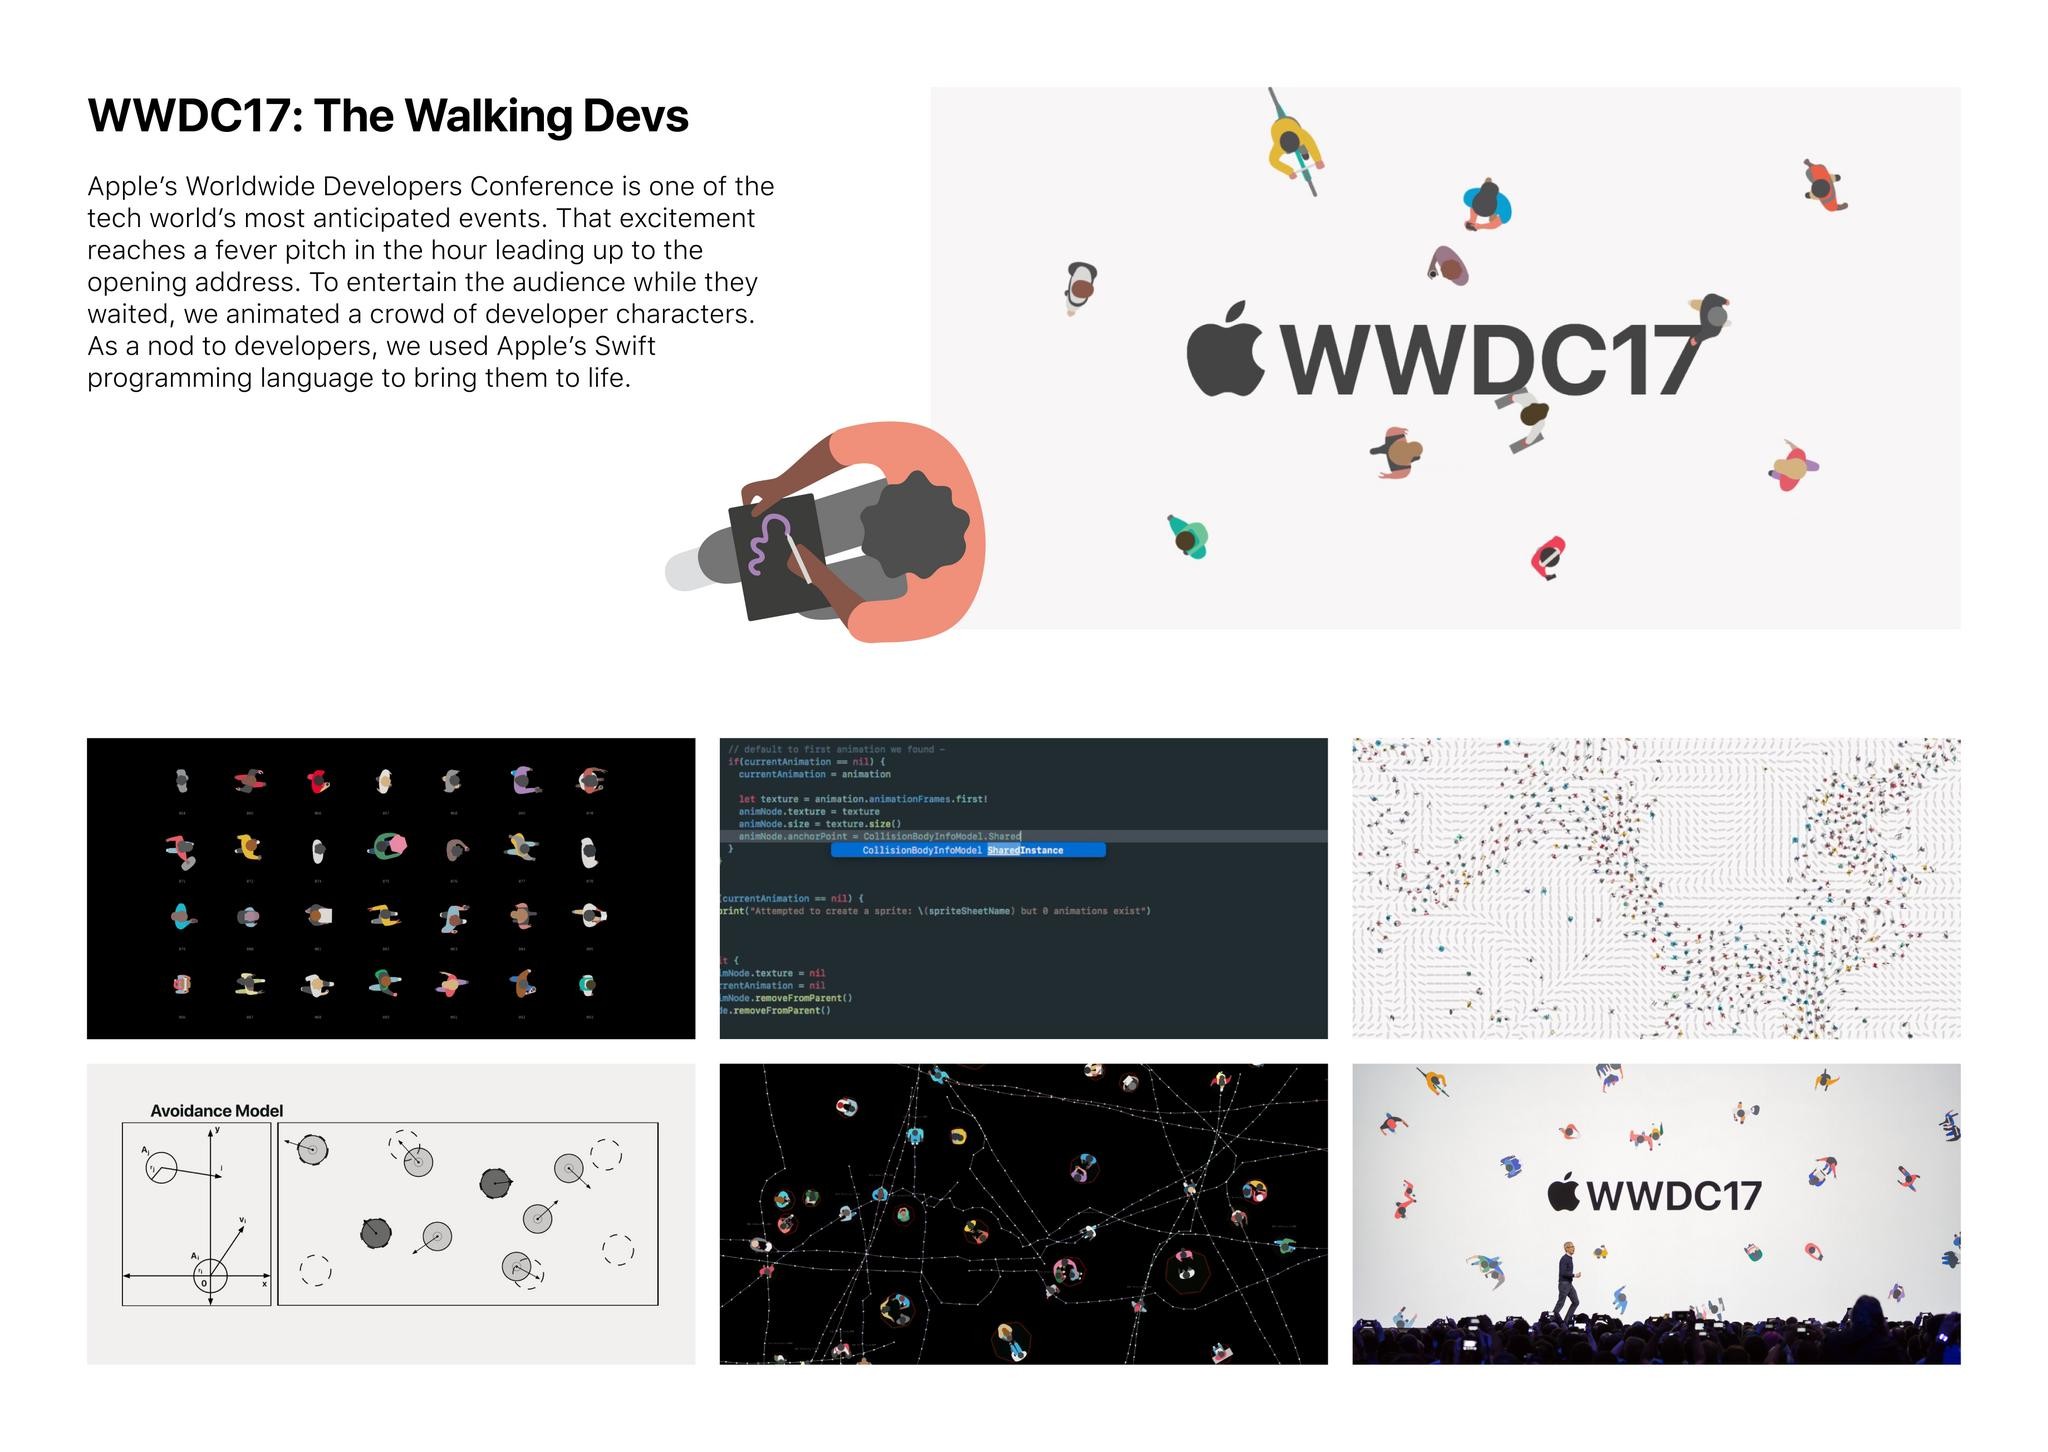 WWDC: The Walking Devs